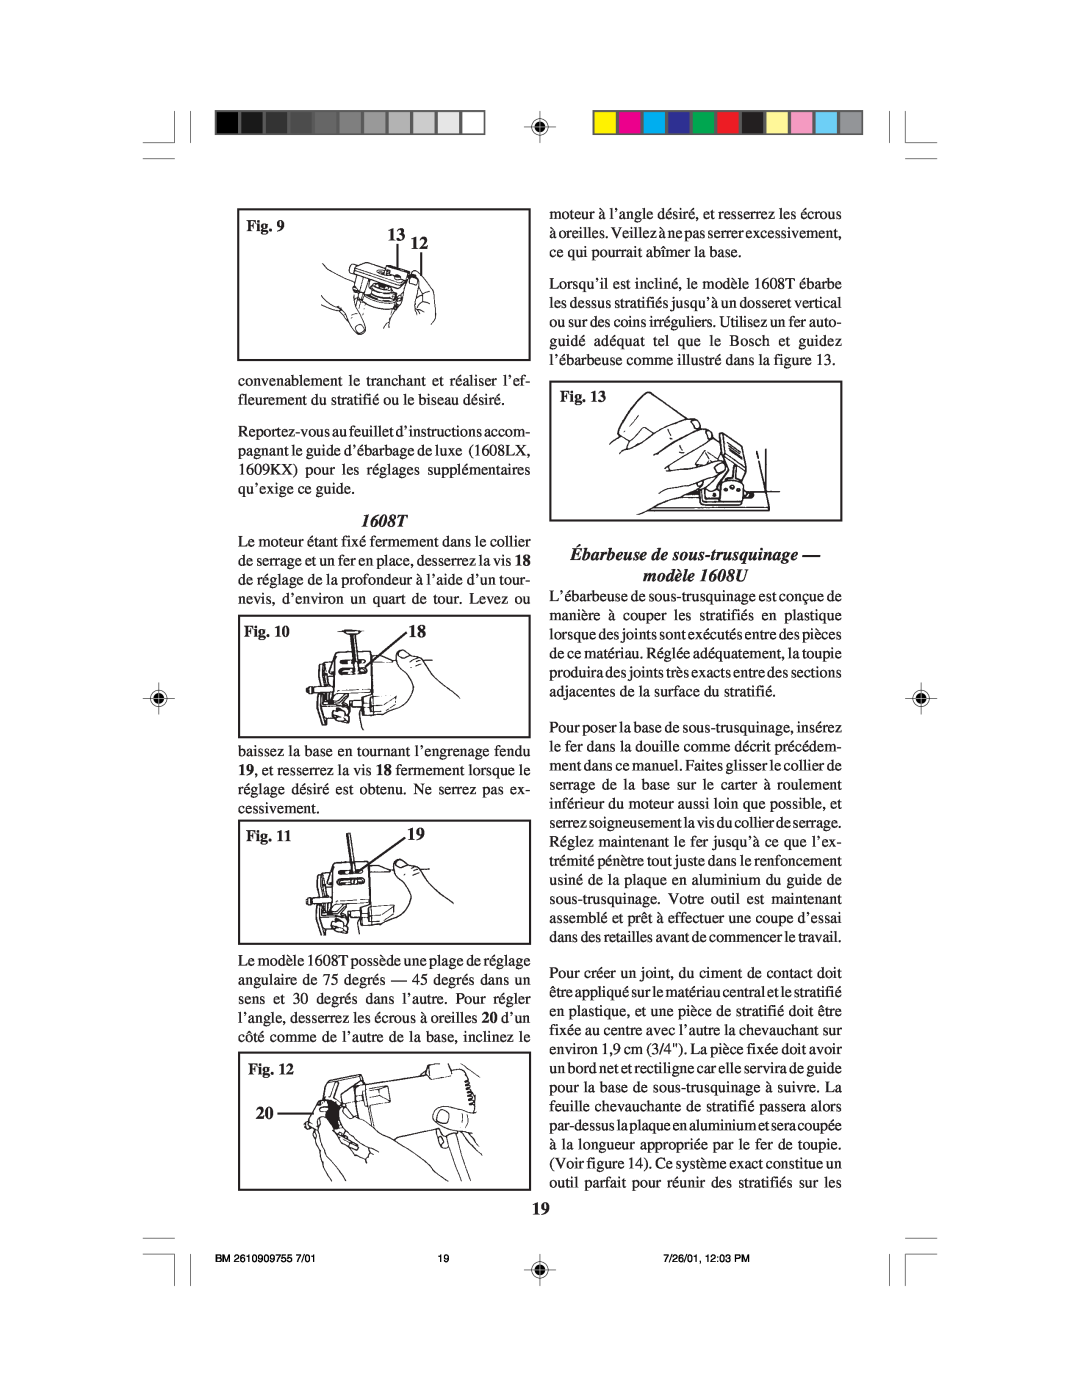 Bosch Power Tools 1608LX instruction manual Ébarbeuse de sous-trusquinage modèle 1608U, 1608T 